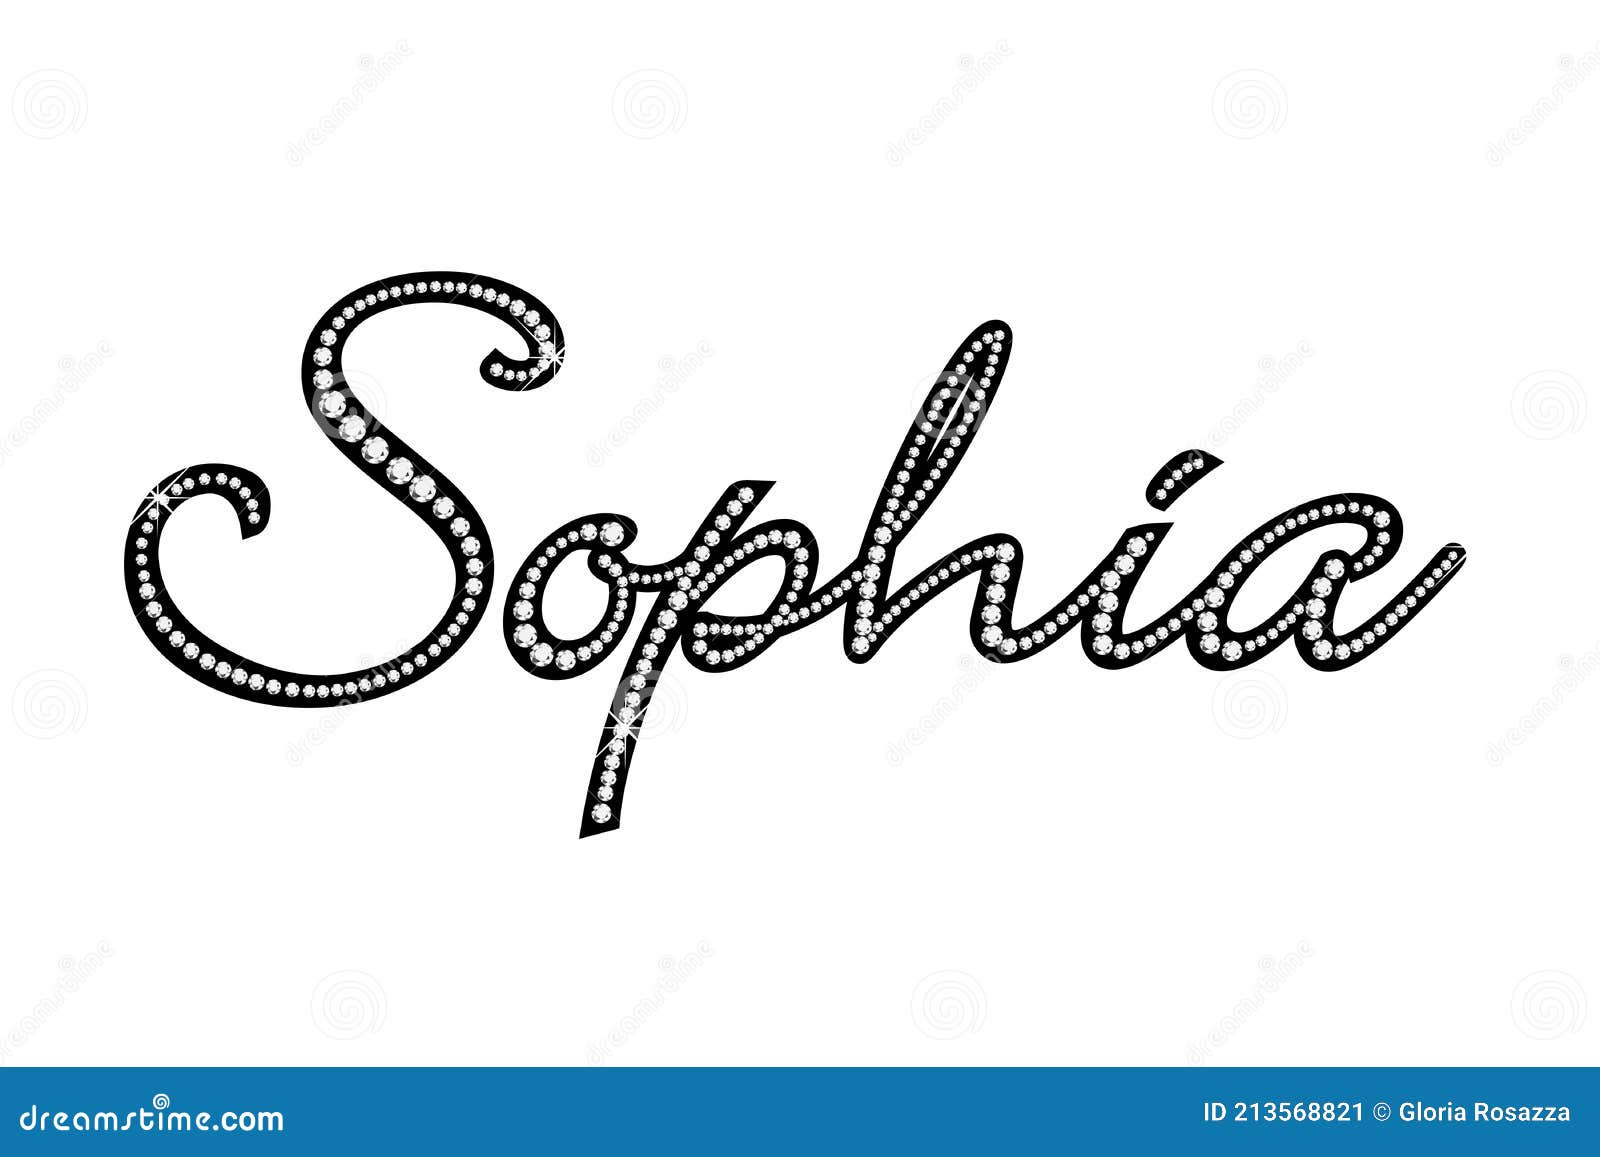 most popular baby name sophia gold diamonds bling bling